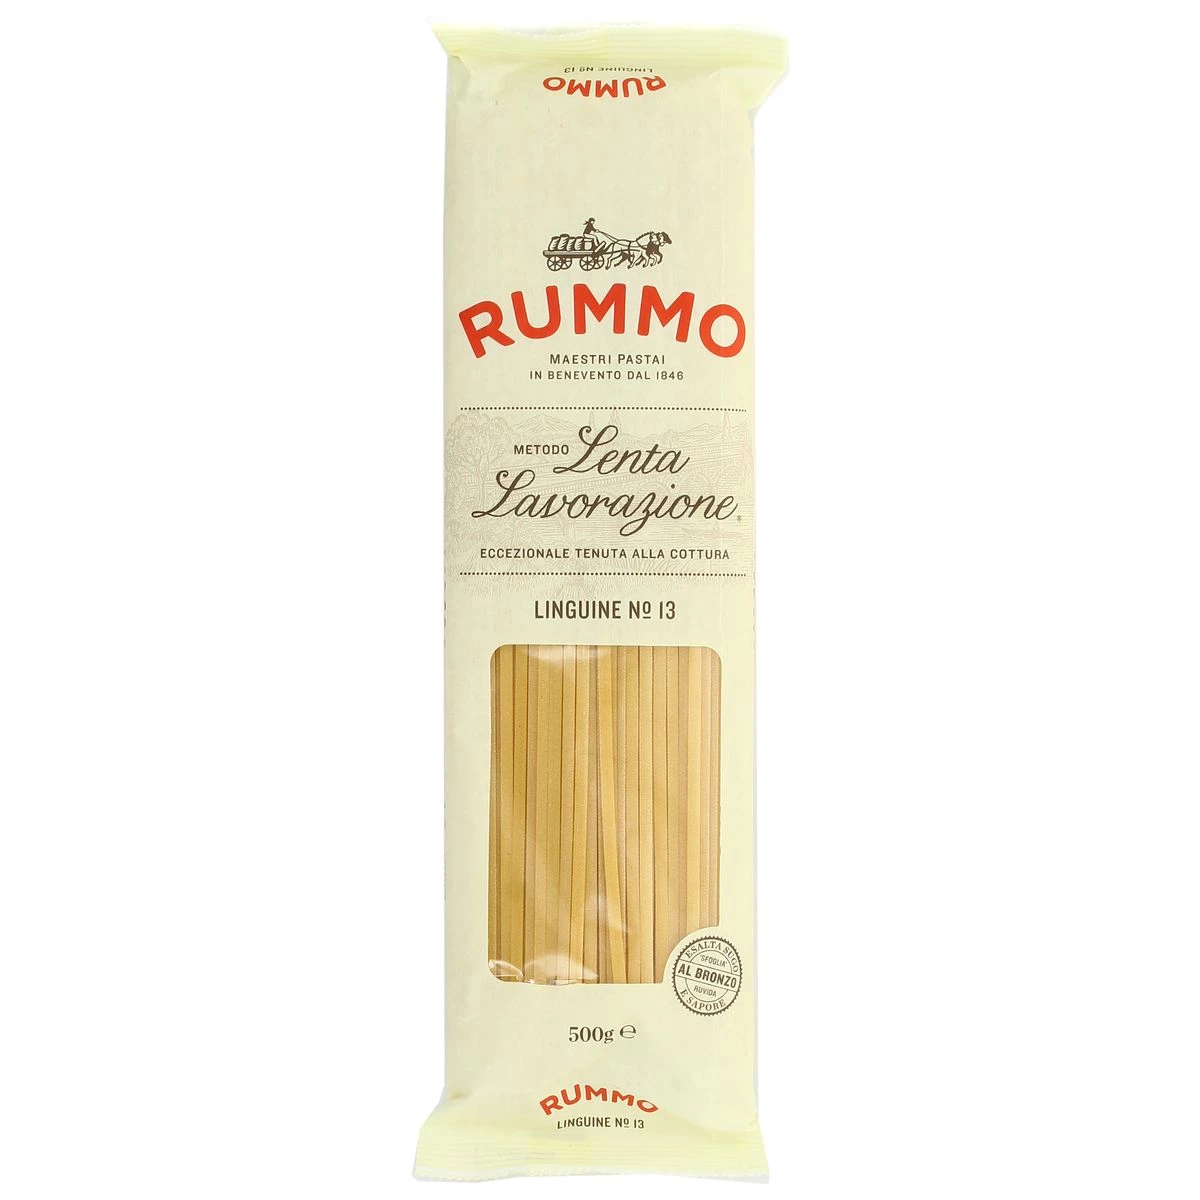 Linguine pasta n°13, 500g - RUMMO